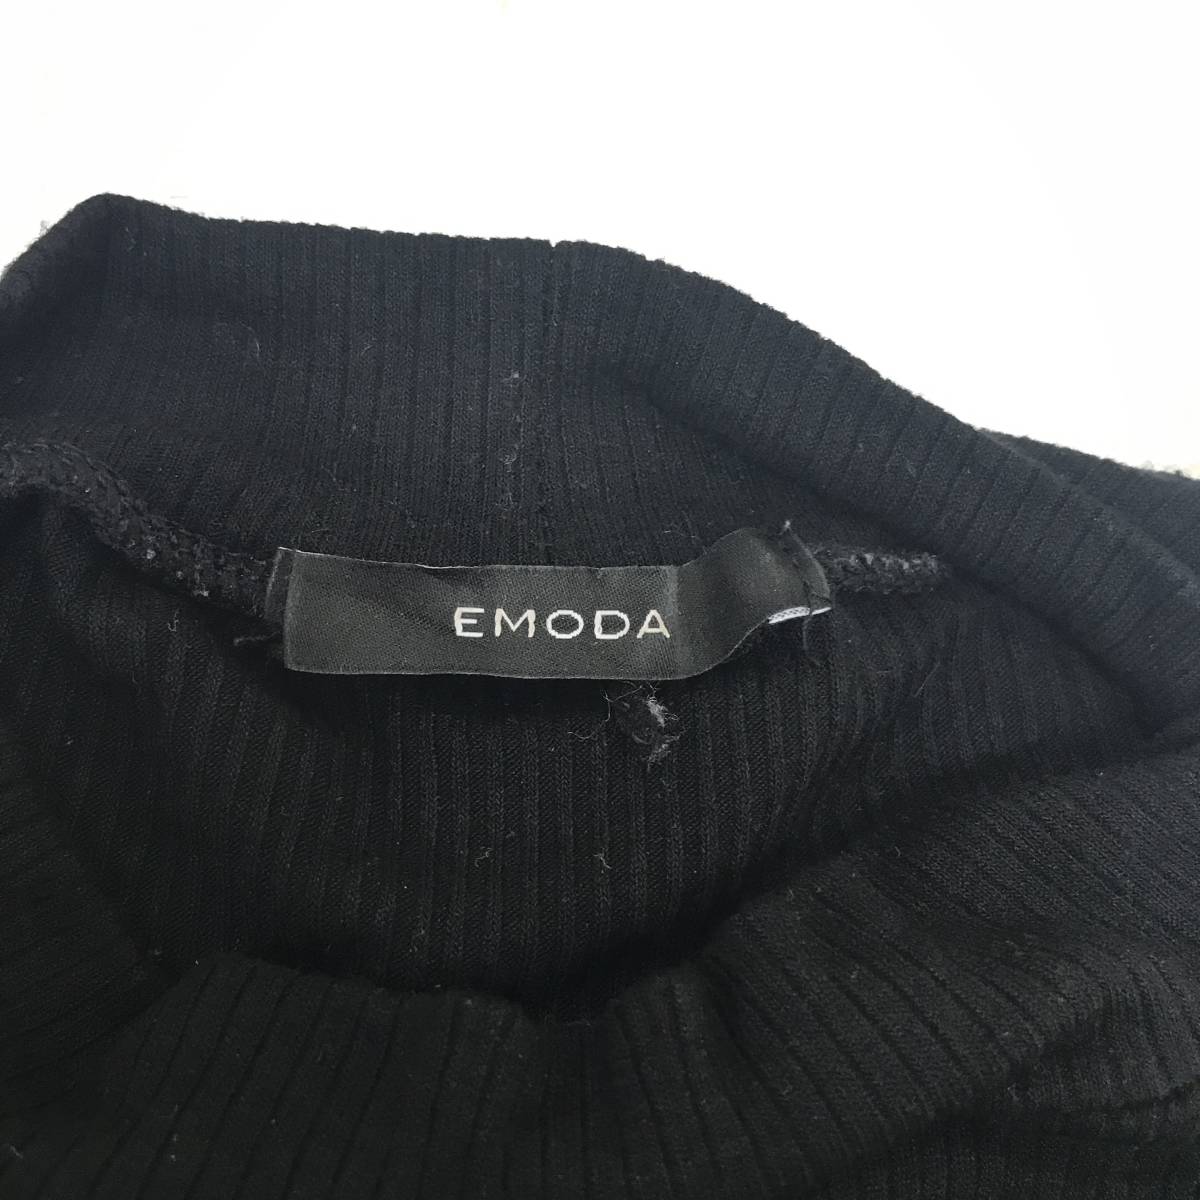 EMODA　エモダ　2WAYアームカバートップス　Fサイズ　ブラック　袖取り外し可能　3WAY仕様にもできる　S5.2-112　USED_画像9